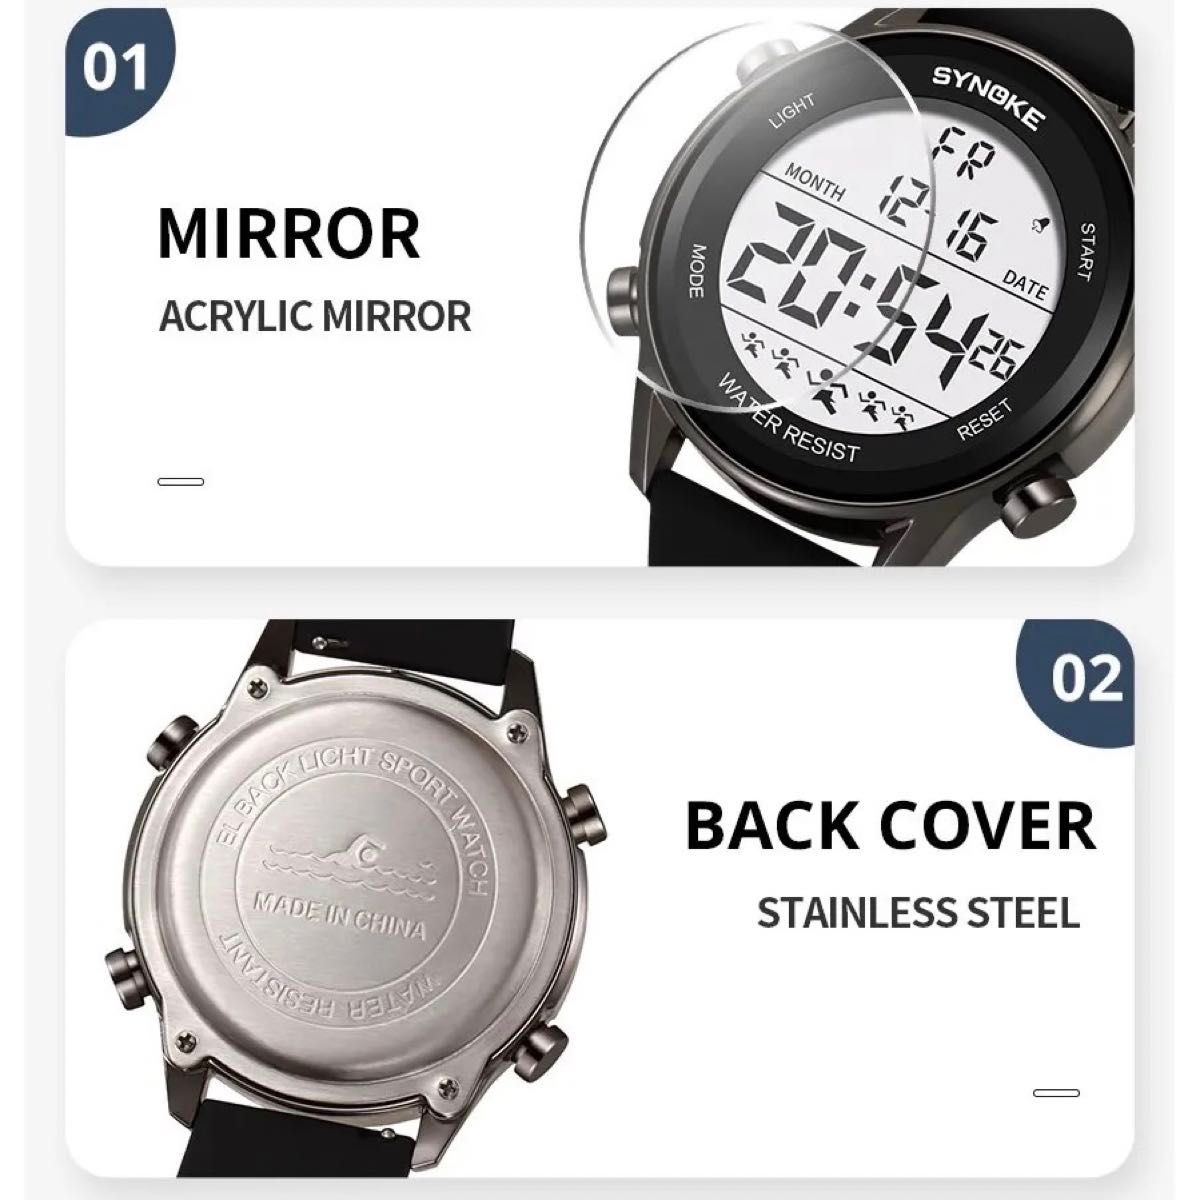 新品 SYNOKEスポーツデジタル 防水 デジタルストップウォッチ メンズ腕時計 9825 ブラック